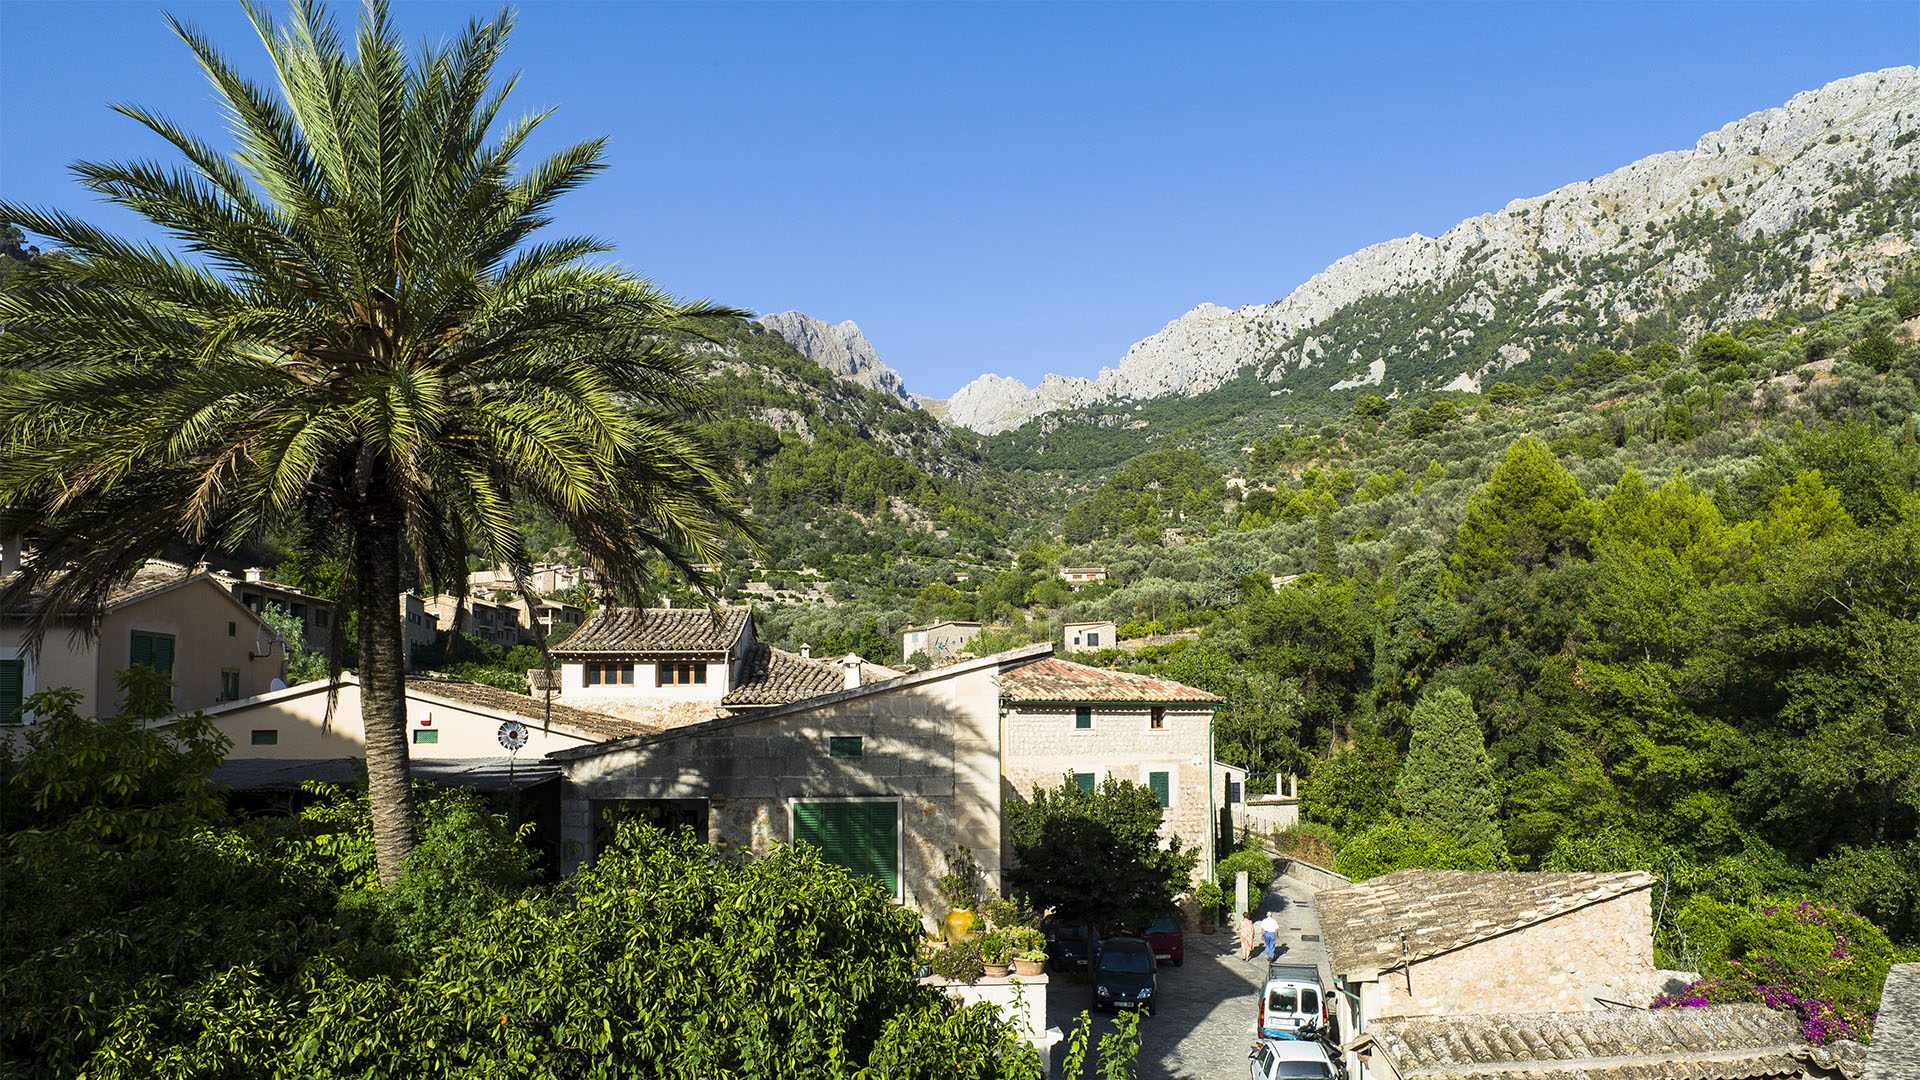 Hinter Fornalutx, Mallorca erhebt sich das Tramuntana Gebirge.